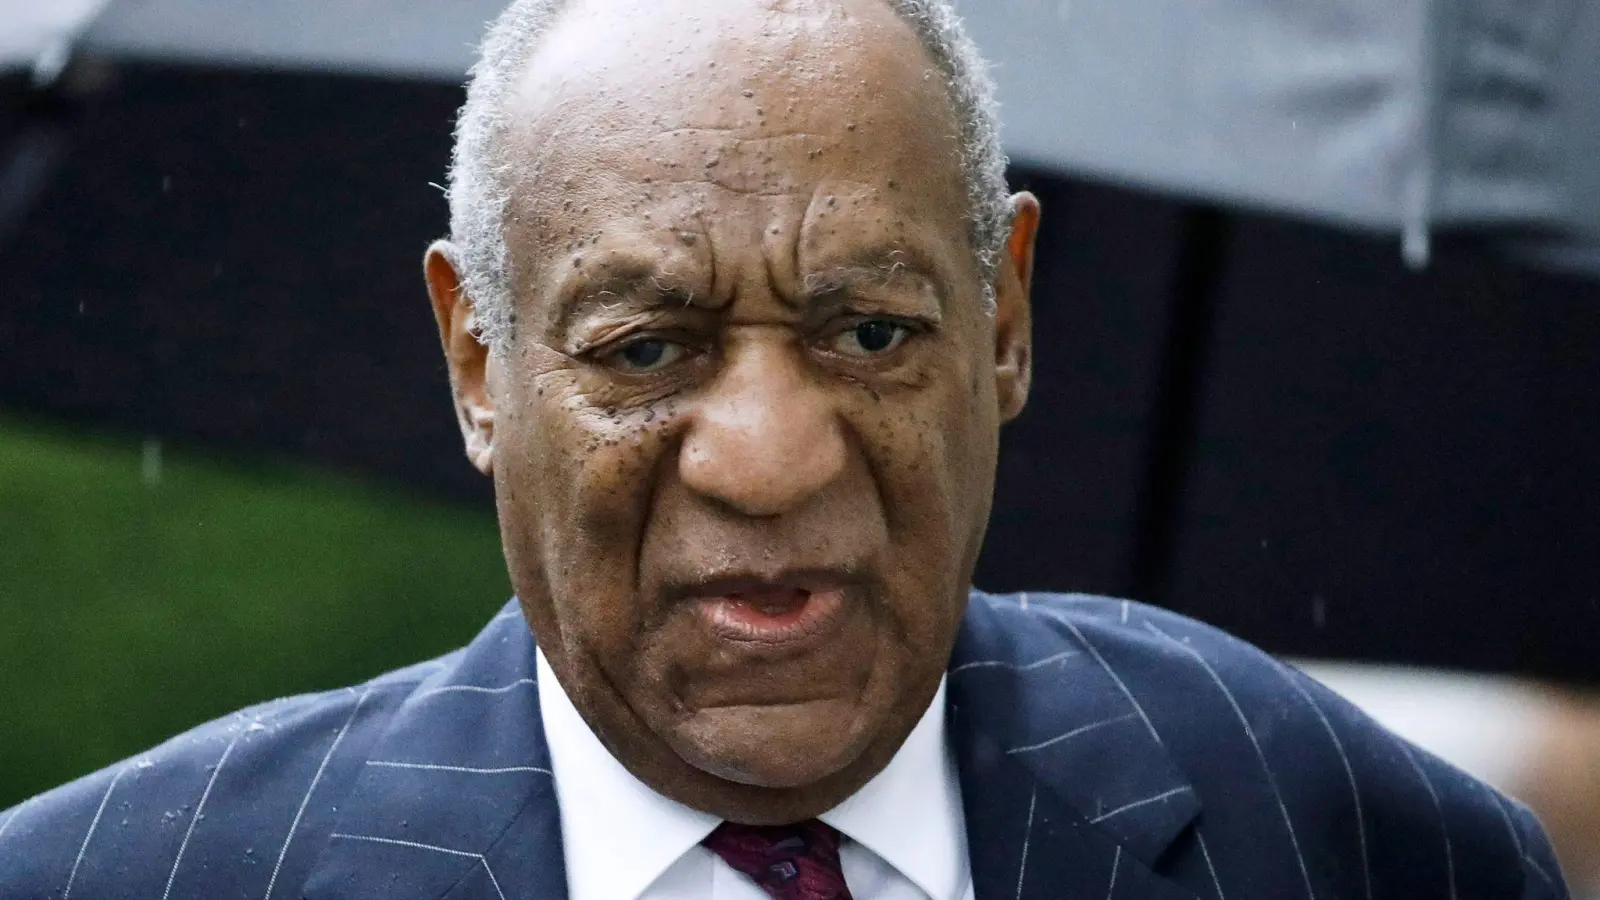 Bill Cosby war 2018 wegen sexueller Nötigung in einem Strafprozess verurteilt worden. Später kam er wegen eines Verfahrensfehlers auf freien Fuß. (Foto: Matt Rourke/AP/dpa)